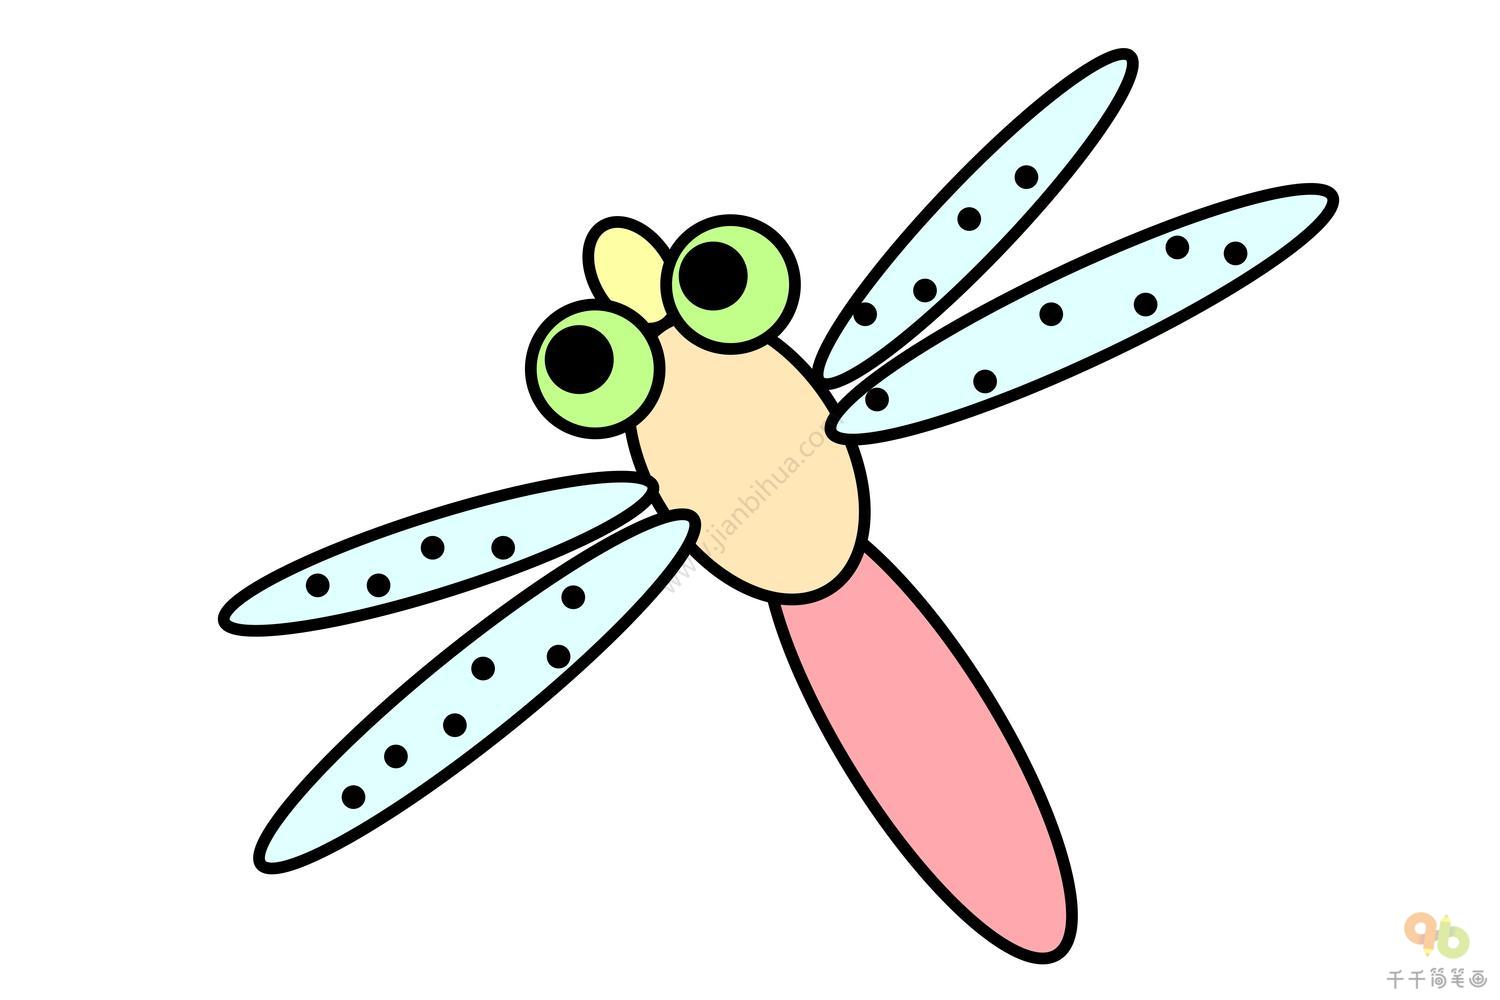 蜻蜓简笔画的画法及图片素材 - 学院 - 摸鱼网 - Σ(っ °Д °;)っ 让世界更萌~ mooyuu.com